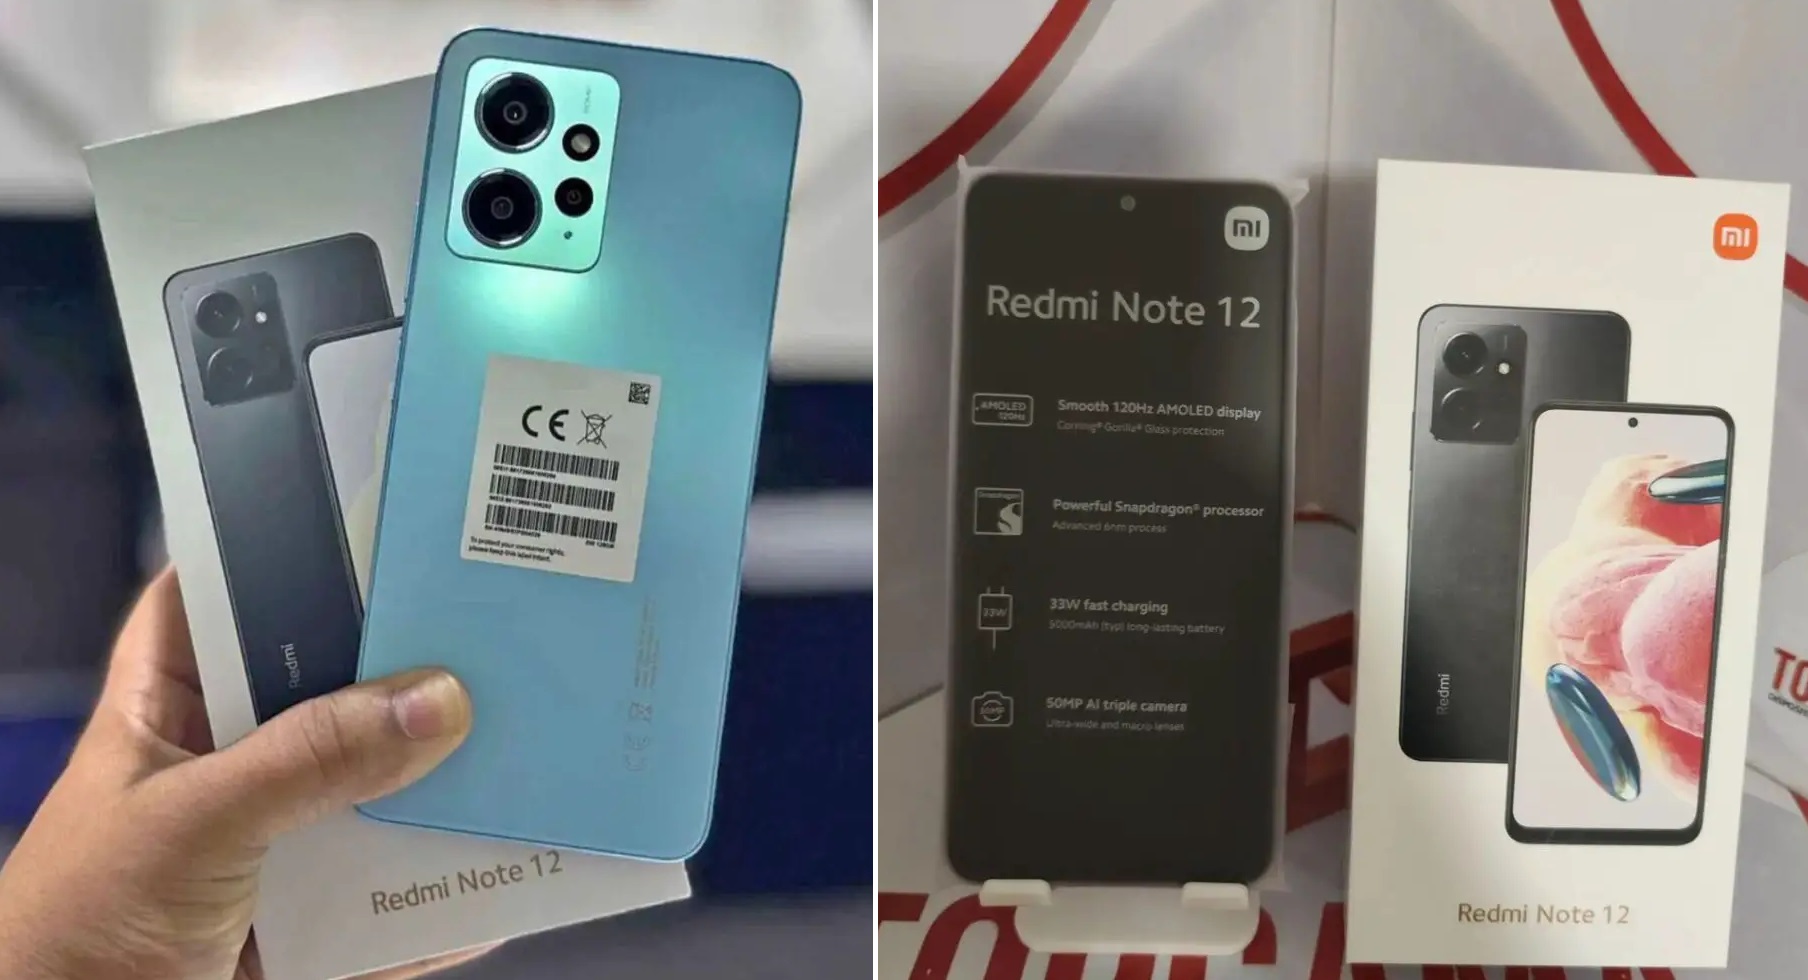 Le Redmi Note 12 4G est équipé d'une puce plus puissante que prévu